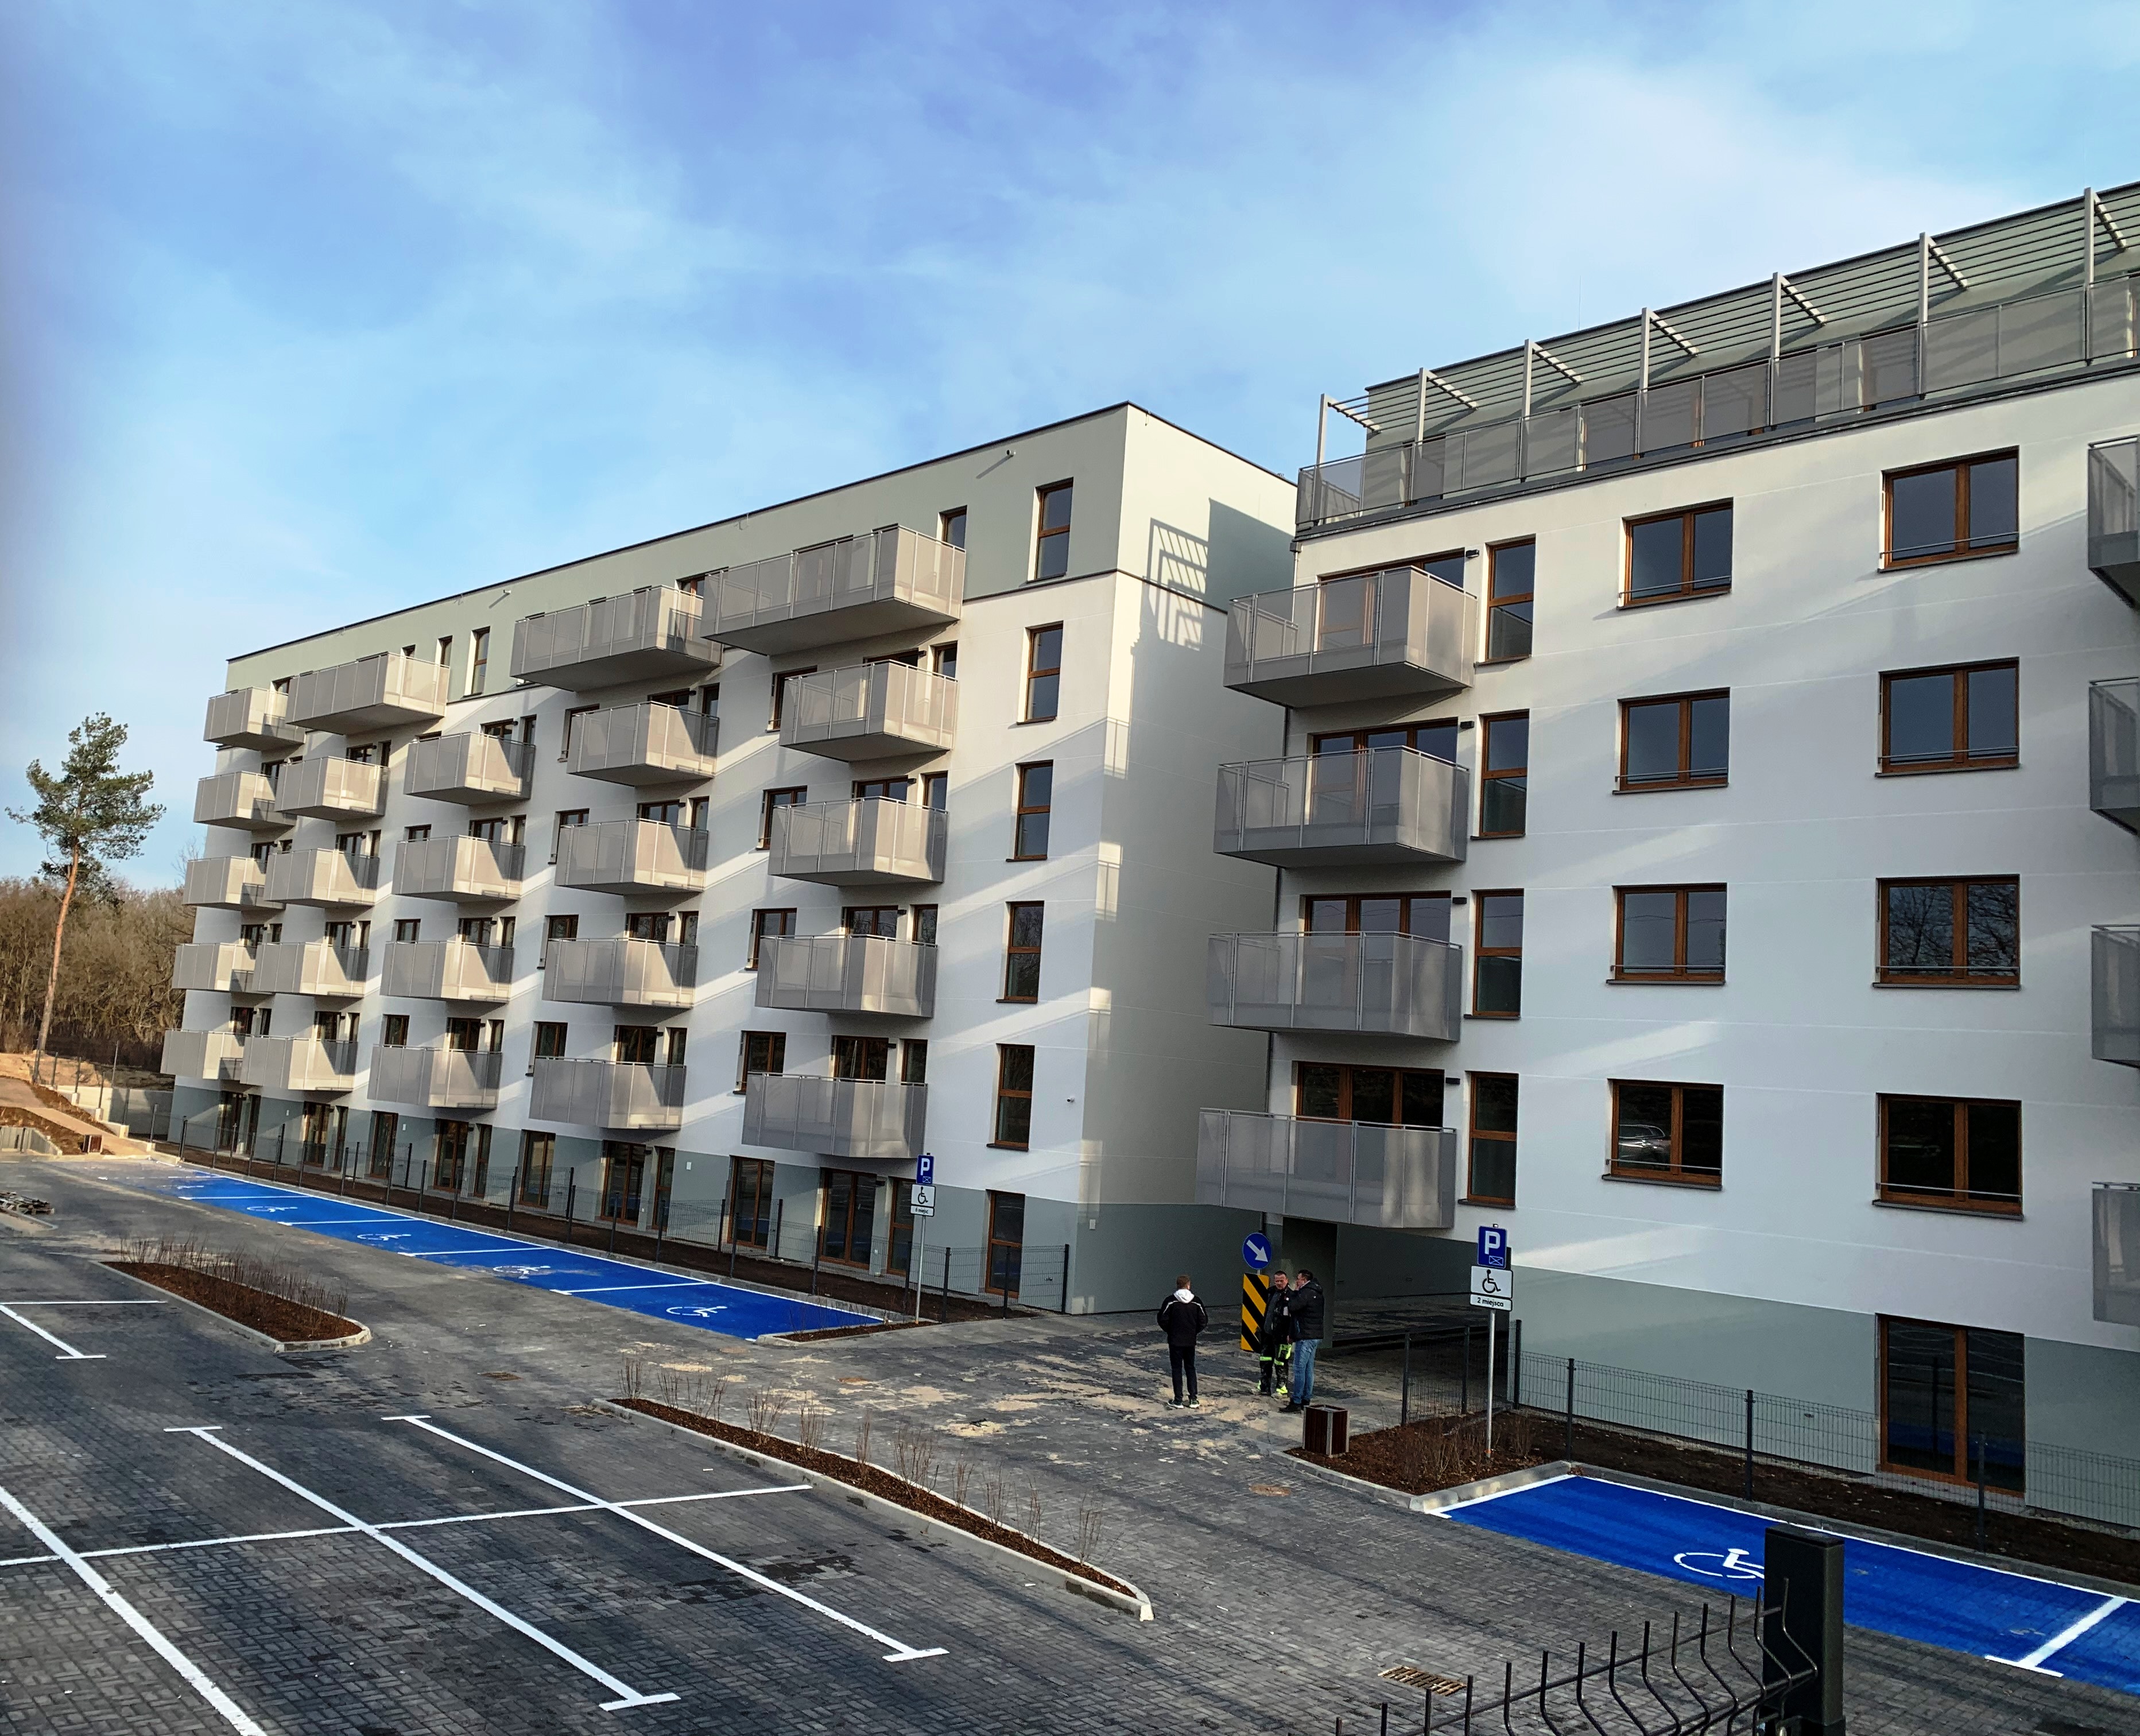 Osiedle mieszkaniowe "FORET" w Warszawie - Costruzione edilizia